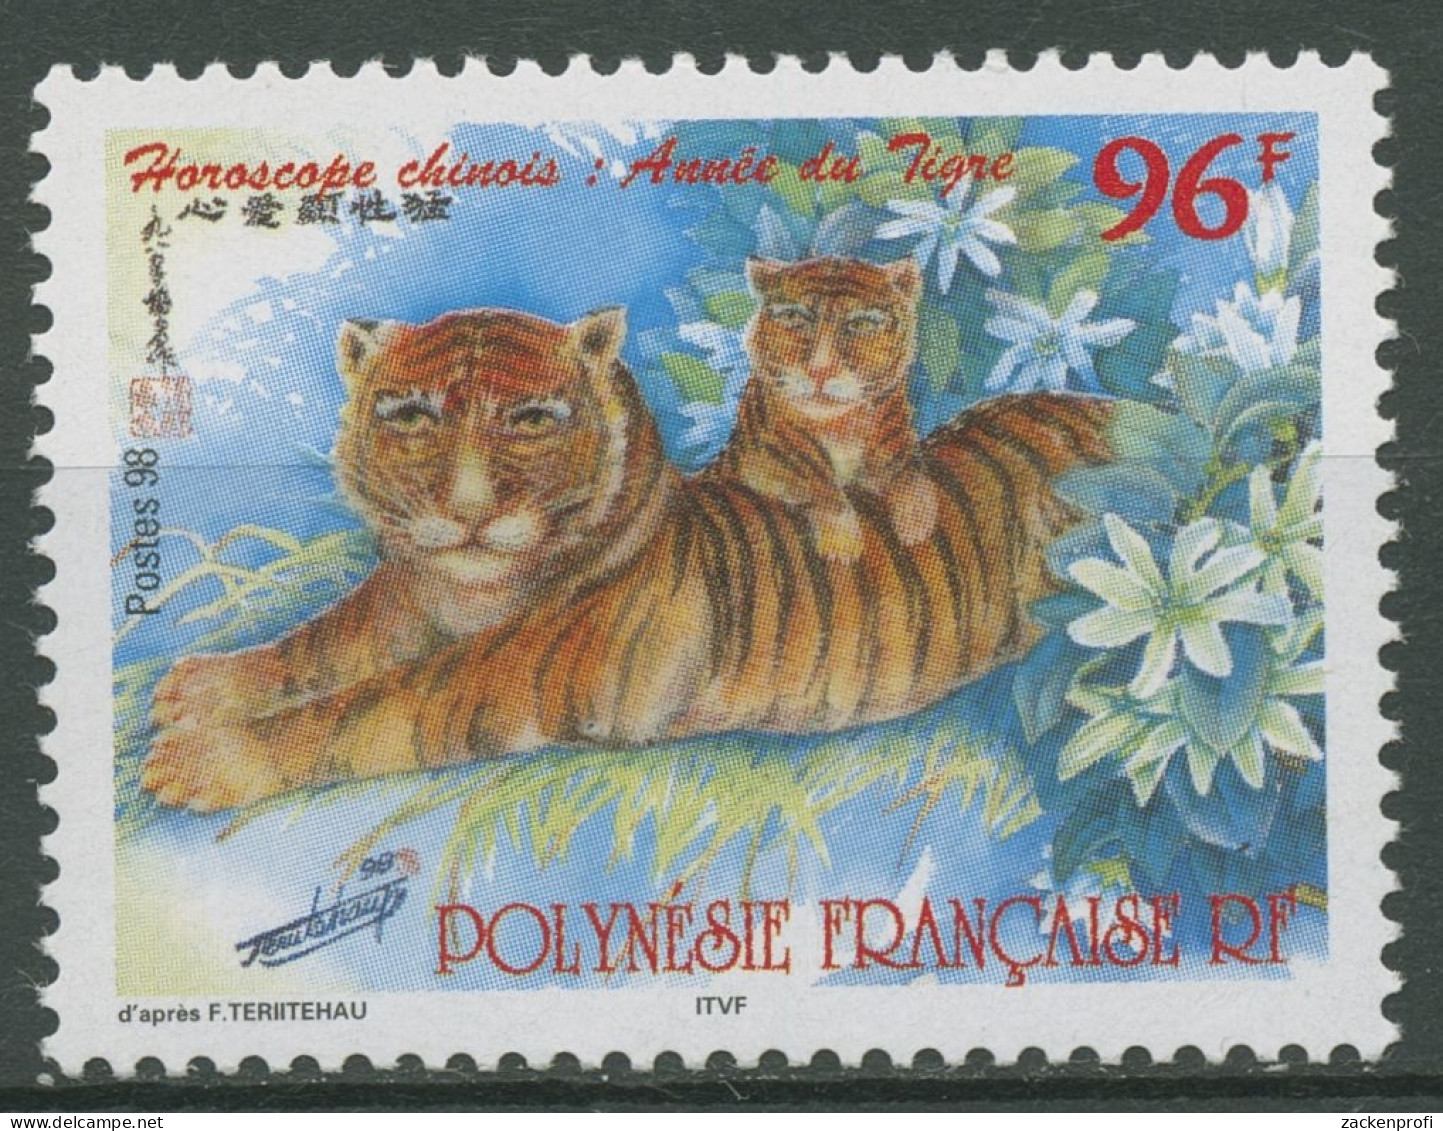 Französisch-Polynesien 1998 Chin. Neujahr Jahr Des Tigers 755 Postfrisch - Neufs